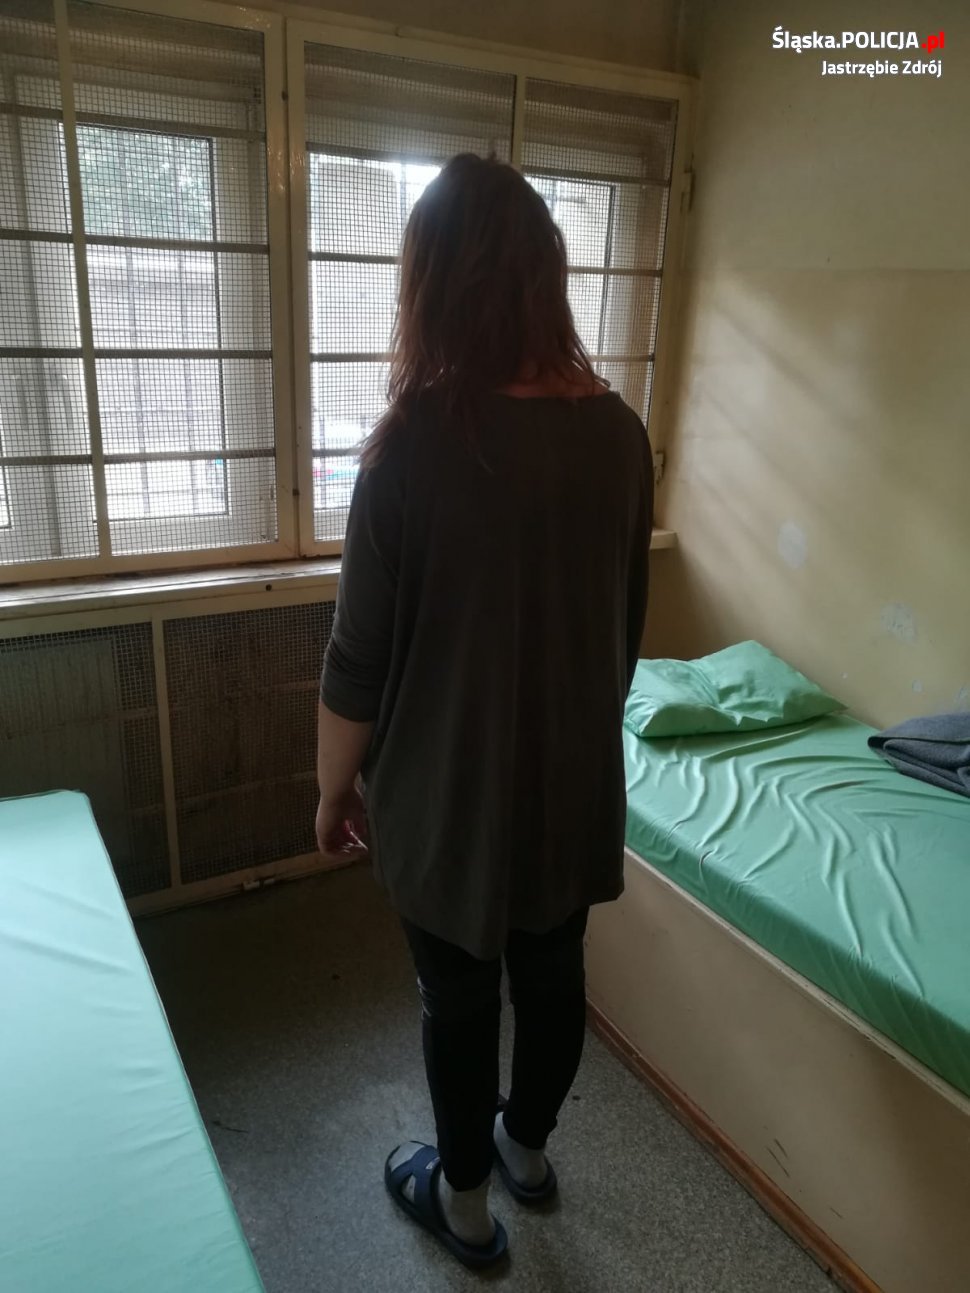 Policja Jastrzębie Poszukiwana 19-latka zawitała do komendy w Jastrzębiu-Zdroju, twierdząc, że ma odbyć karę i chce zostać zatrzymana